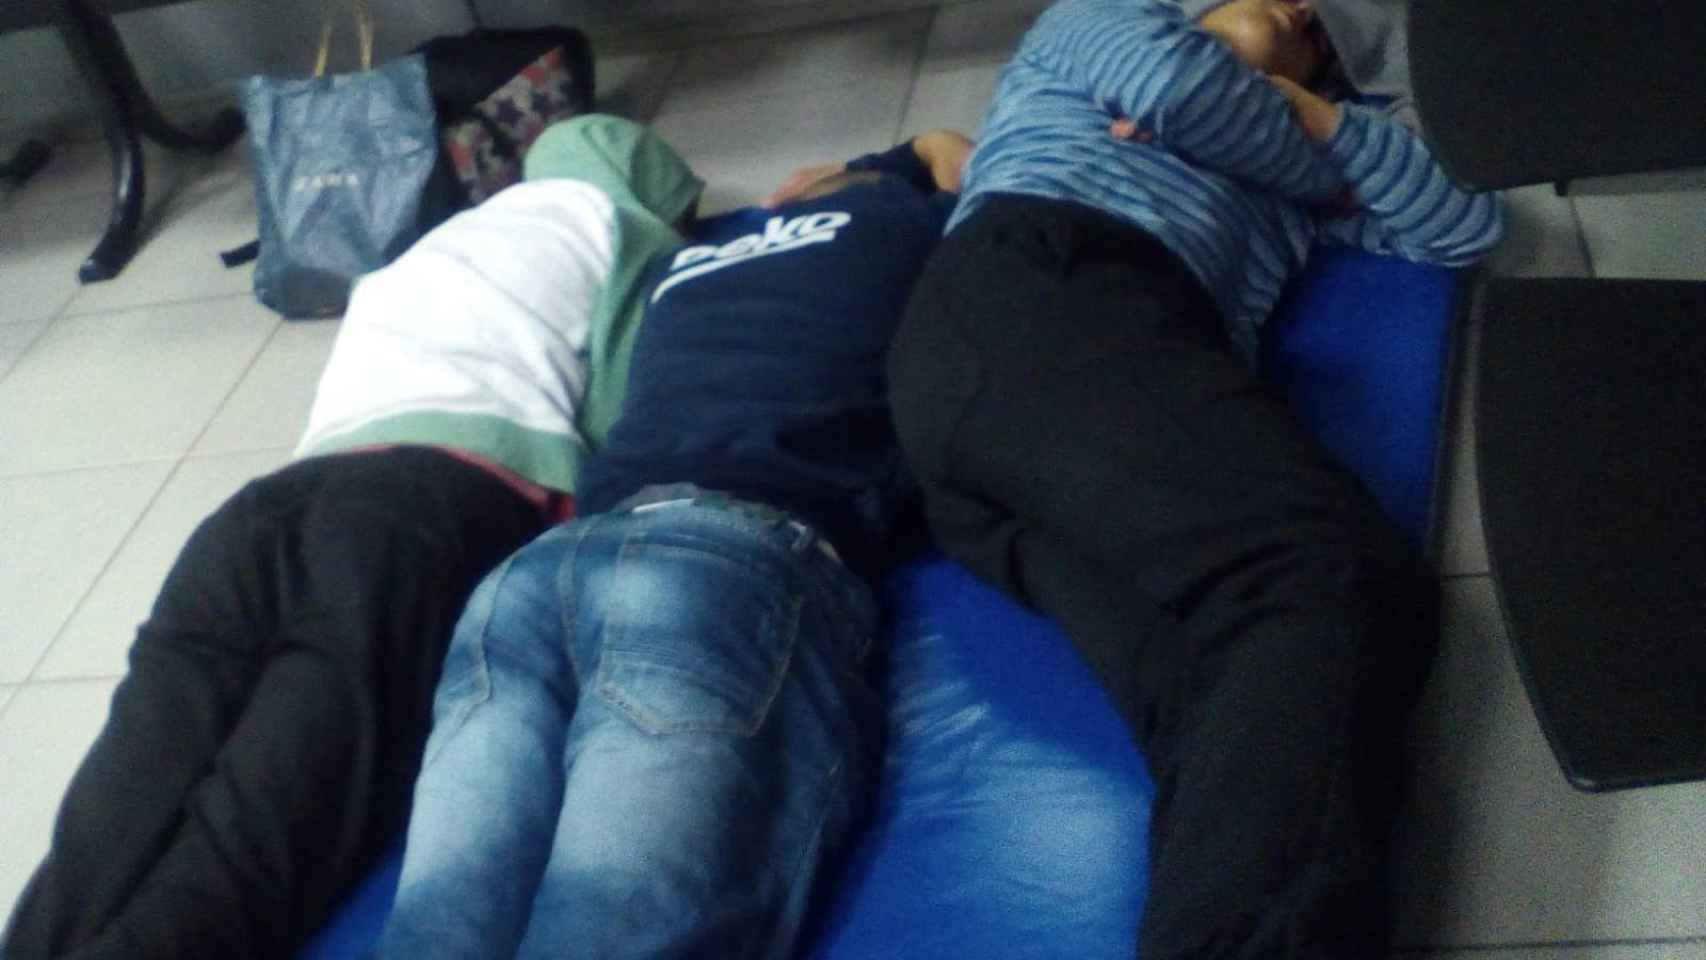 Menores no acompañados durmiendo en la sala de espera de una comisaría de Barcelona